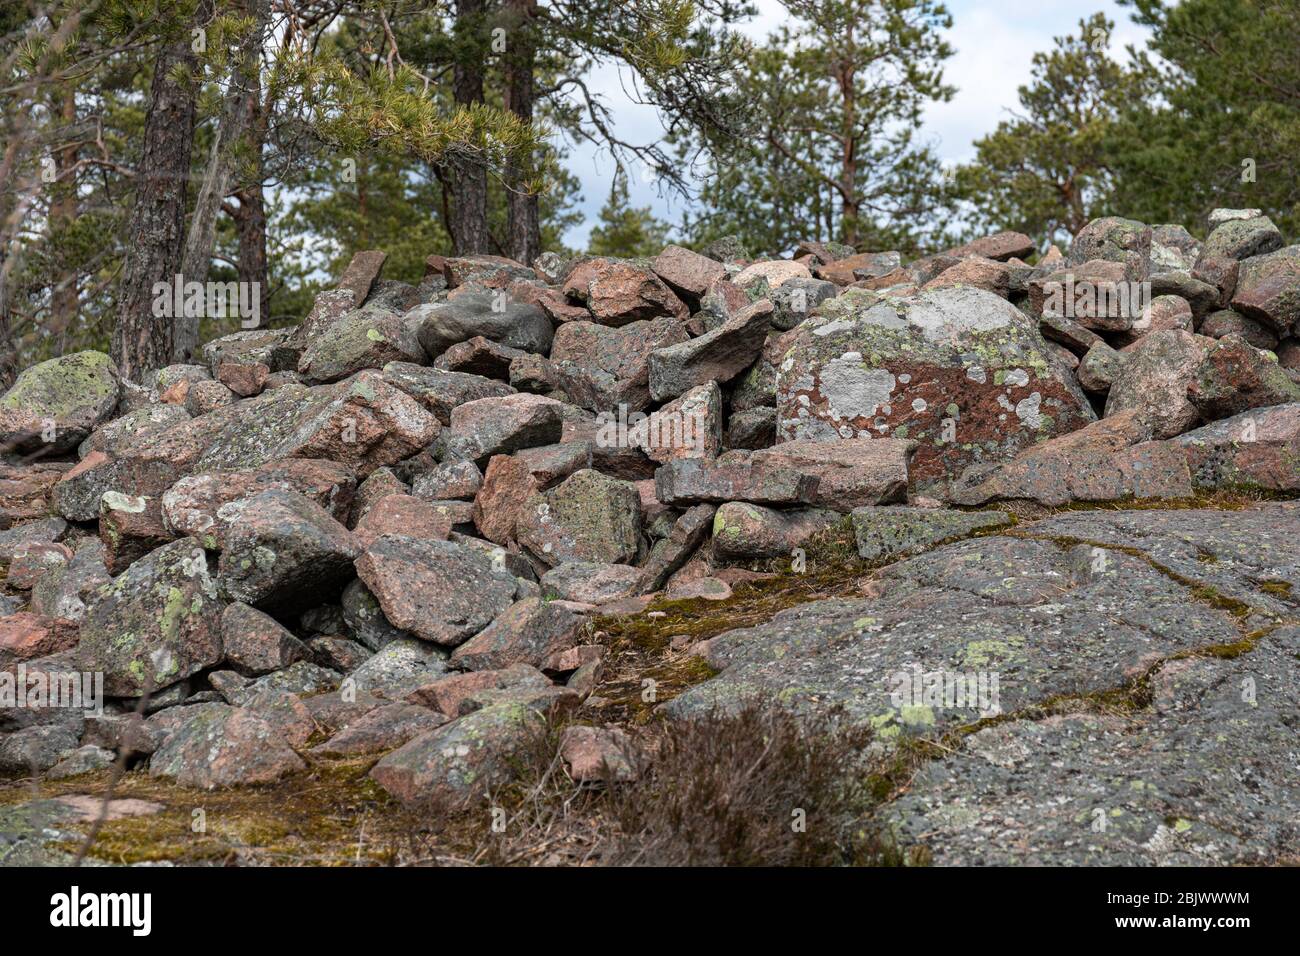 Hiidenkiuas, ein prähistorischer Grabhügel oder Grabhügel aus der Bronzezeit, in Espoo, Finnland Stockfoto